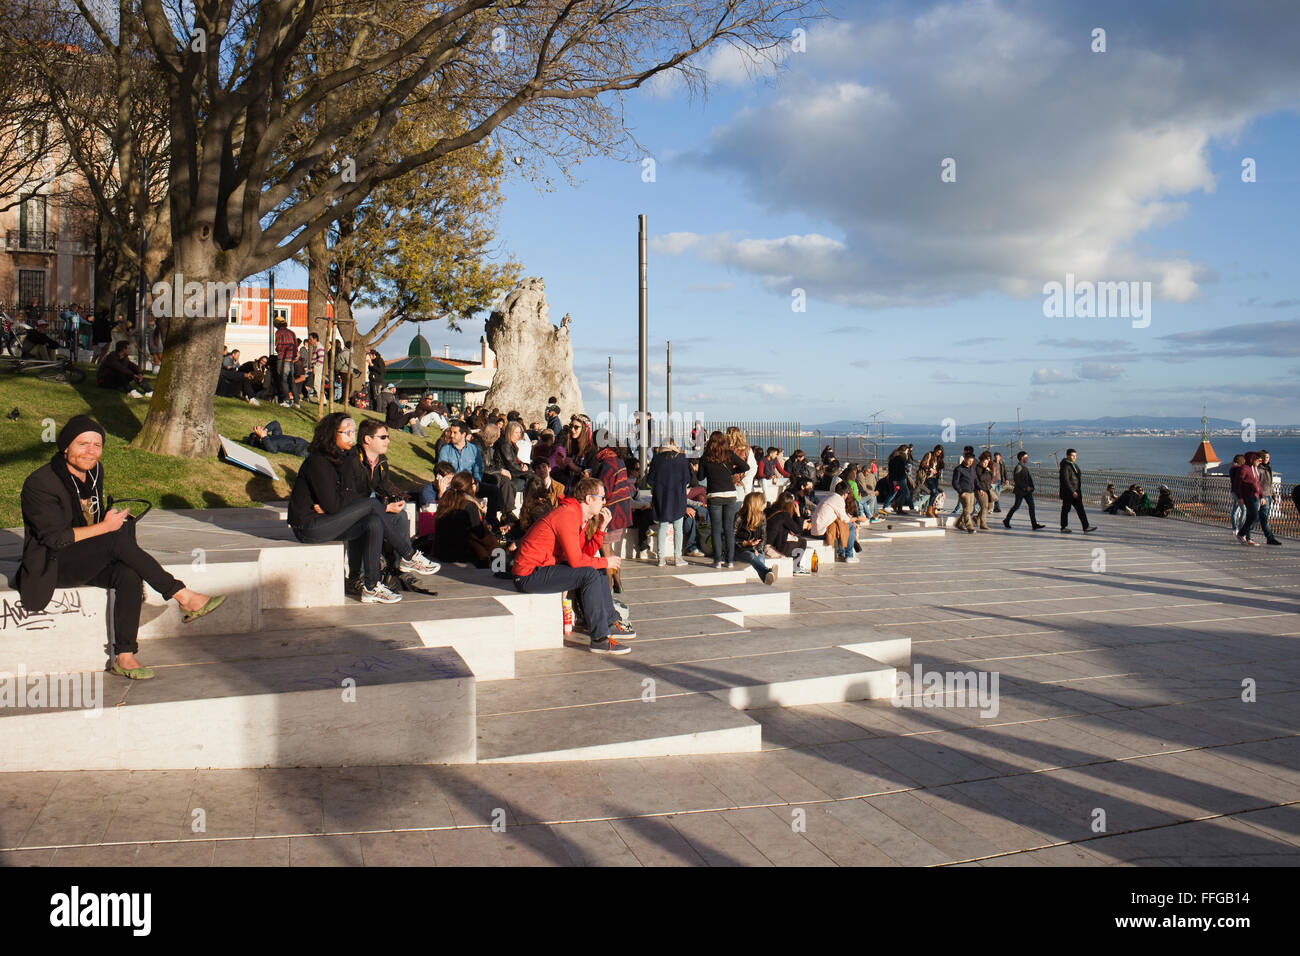 Portugal, city of Lisbon, people hangout at Miradouro de Santa Catarina terrace and garden Stock Photo